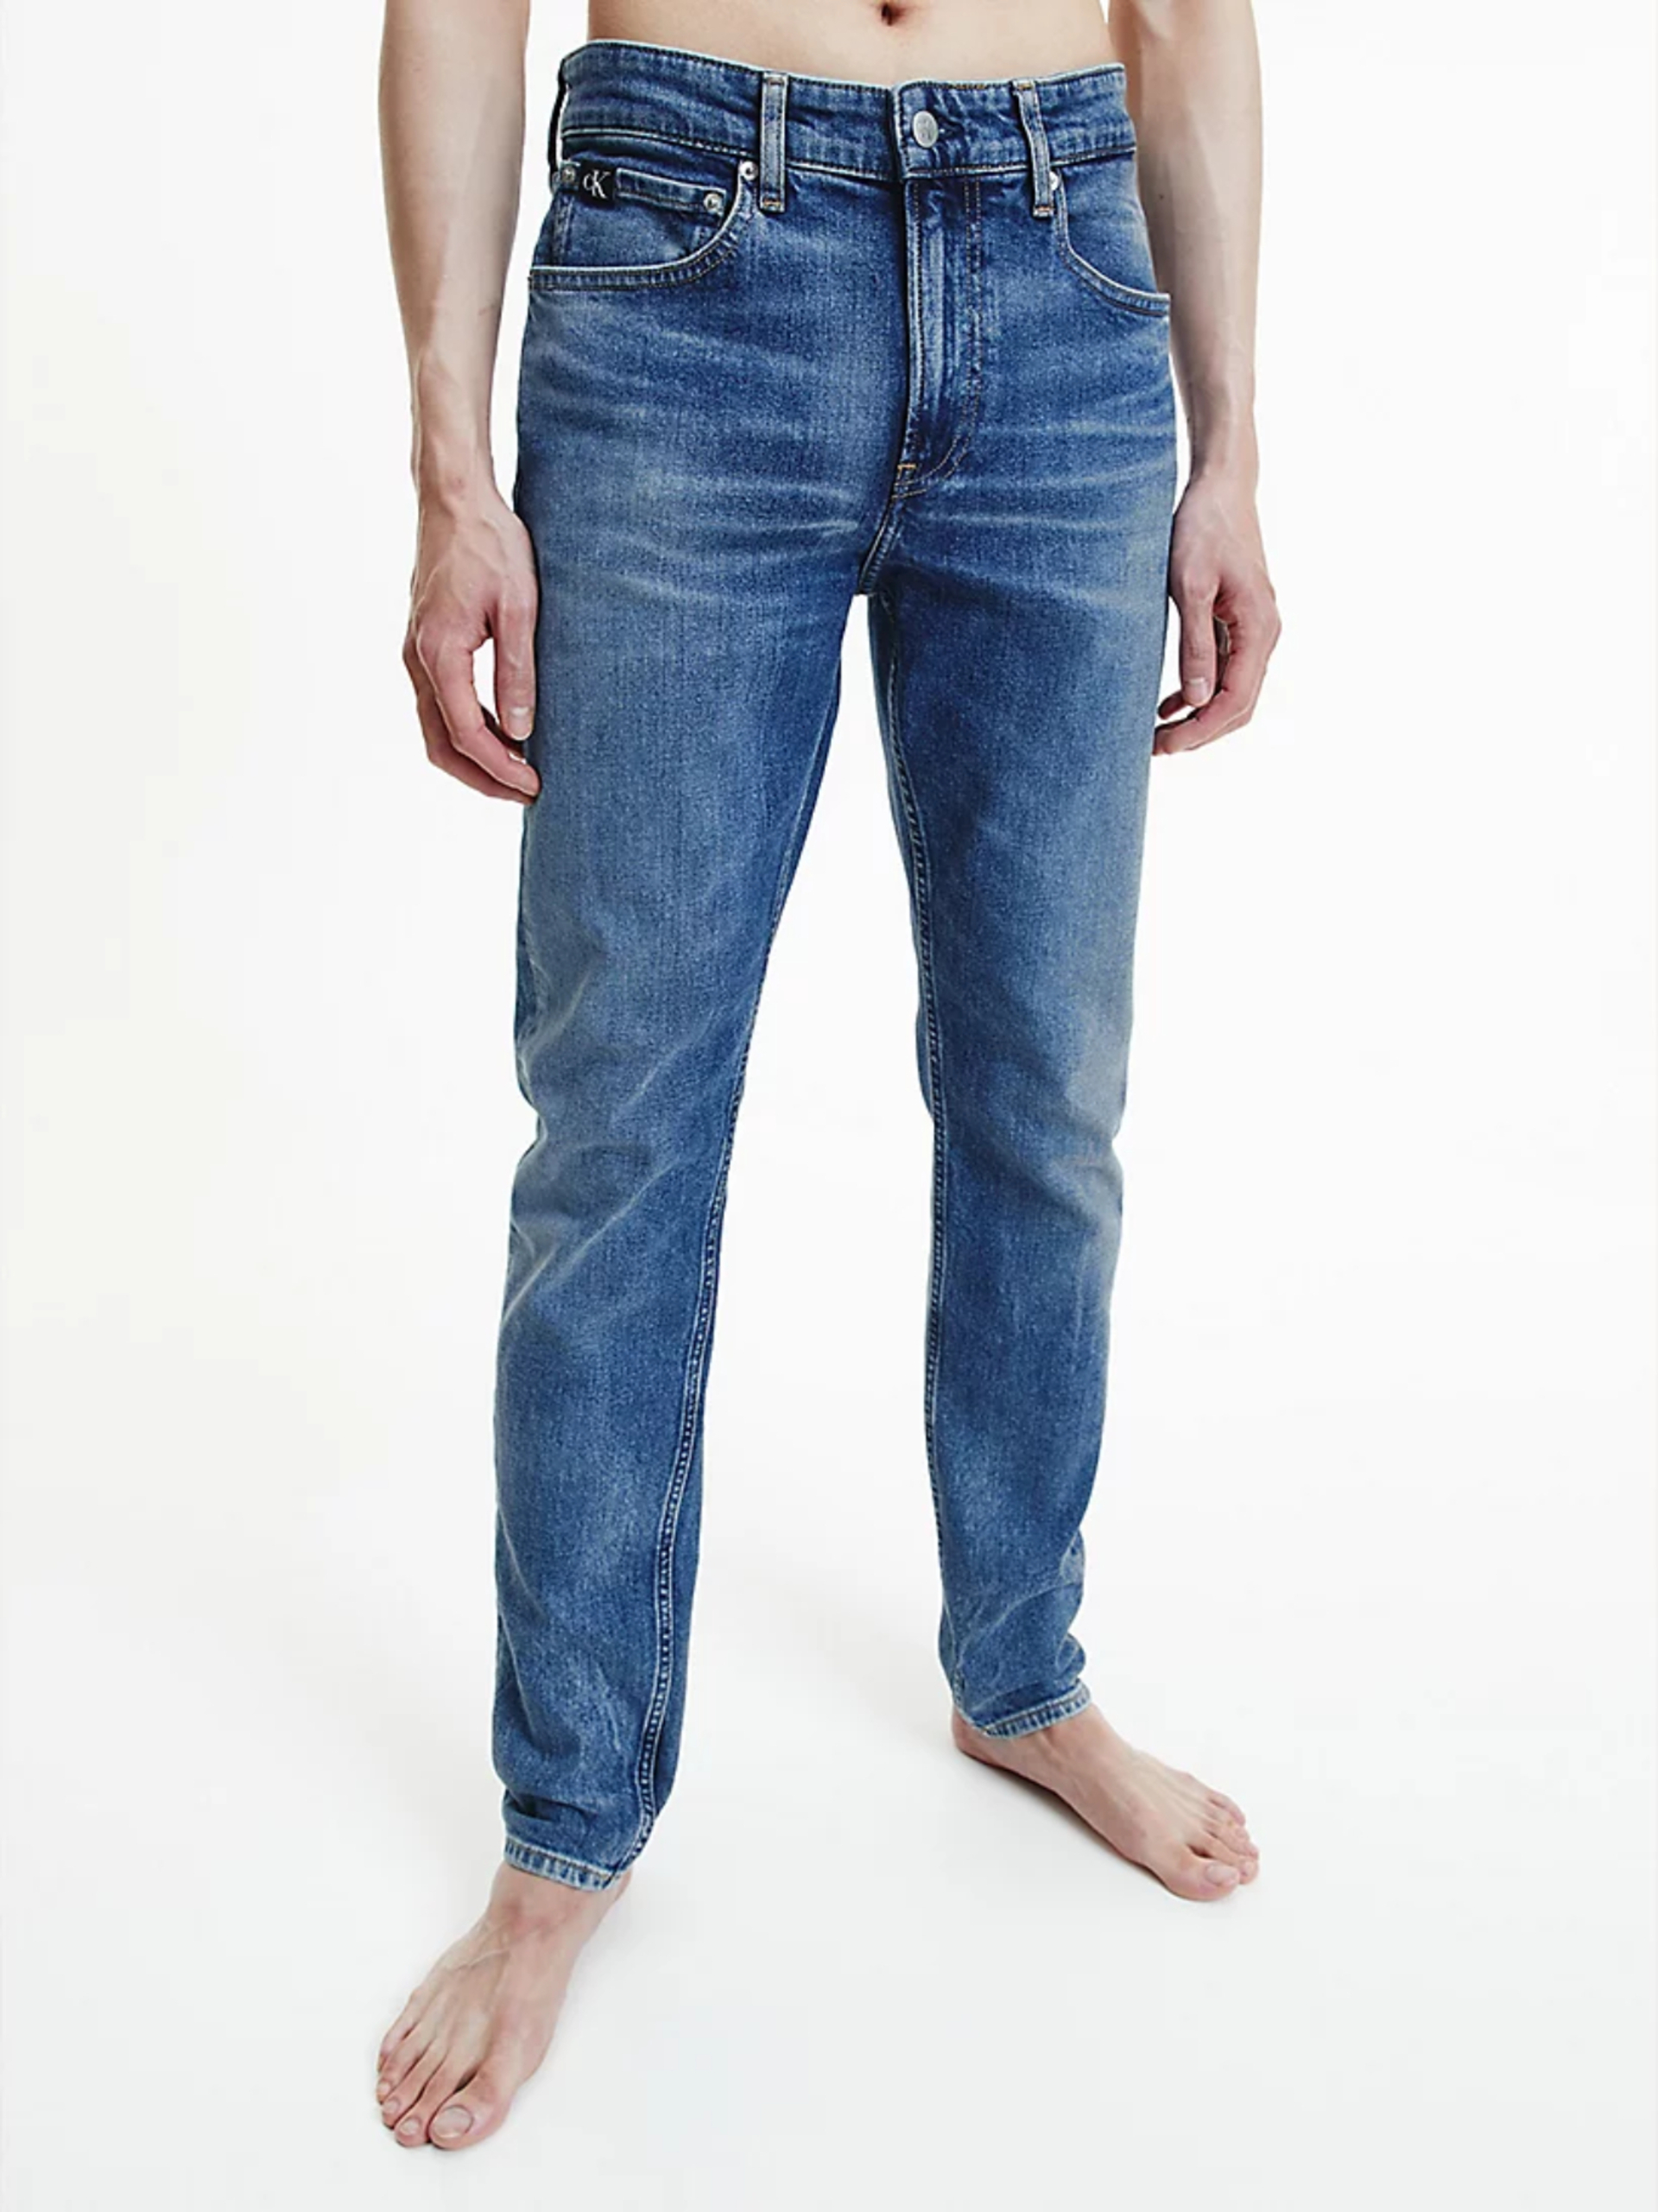 Calvin Klein pánské modré džíny - 33/30 (1A4)